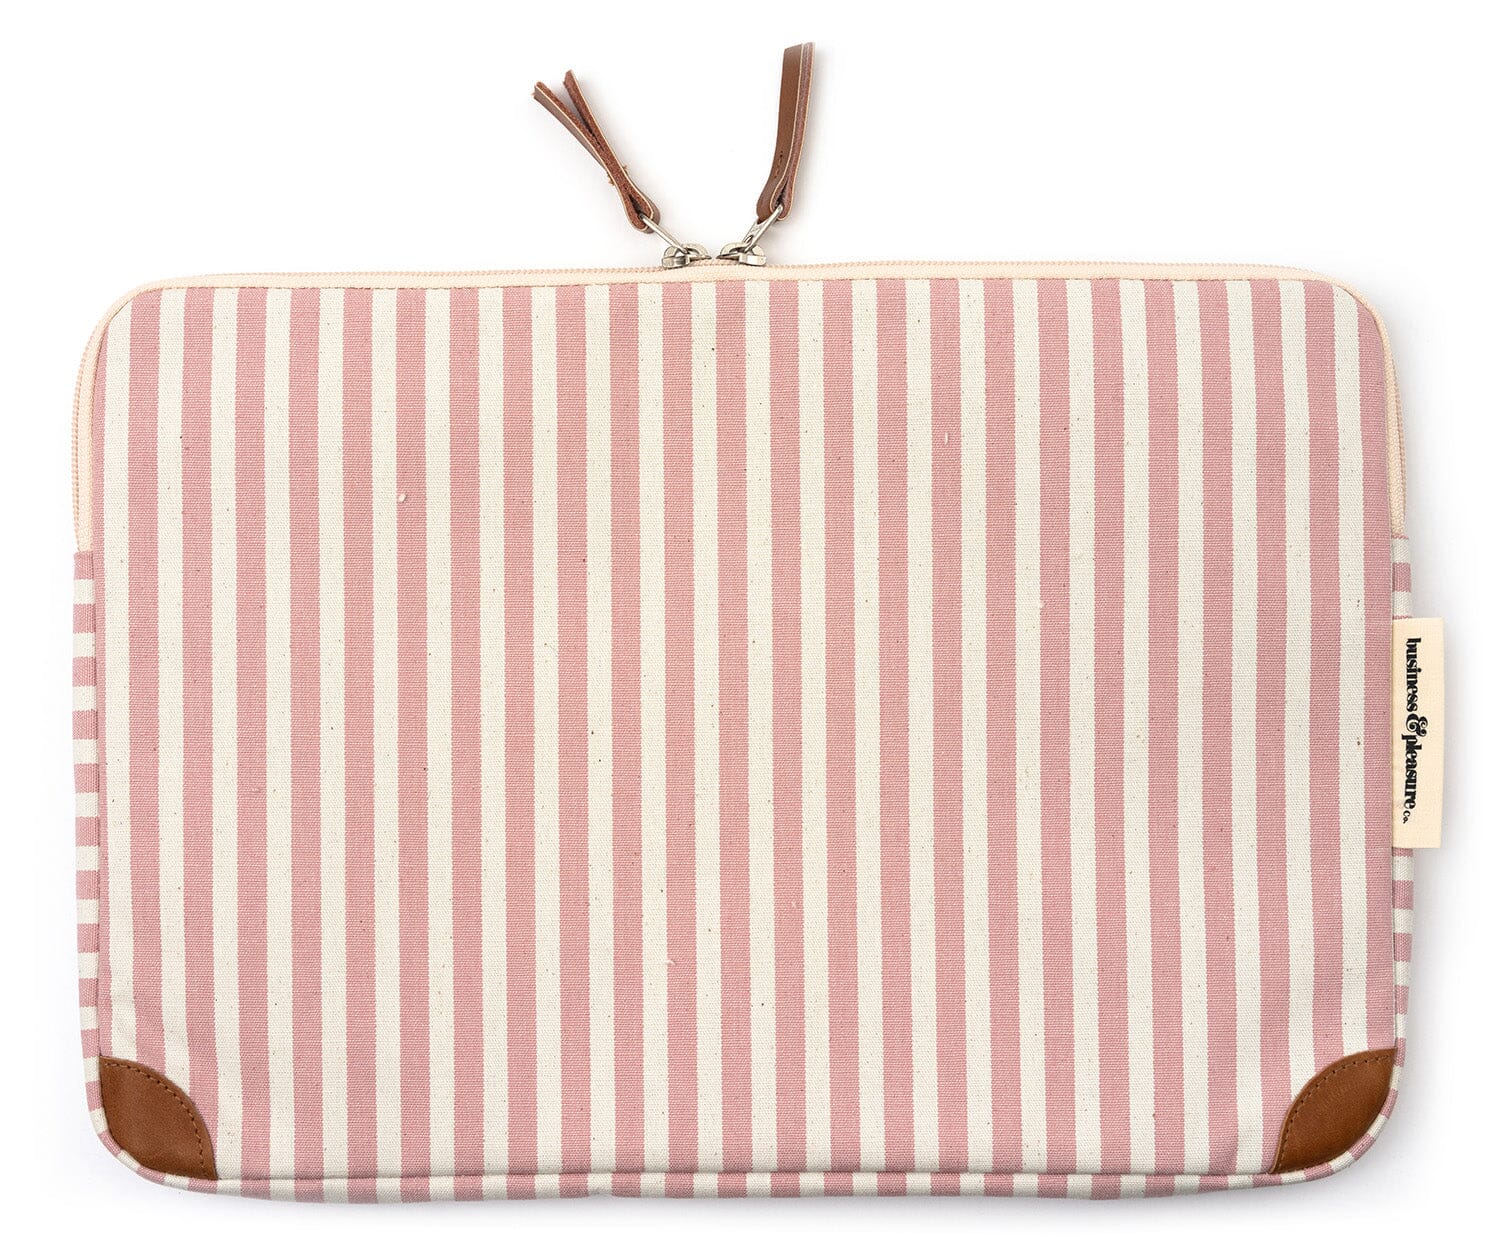 The Laptop Sleeve - Lauren's Pink Stripe